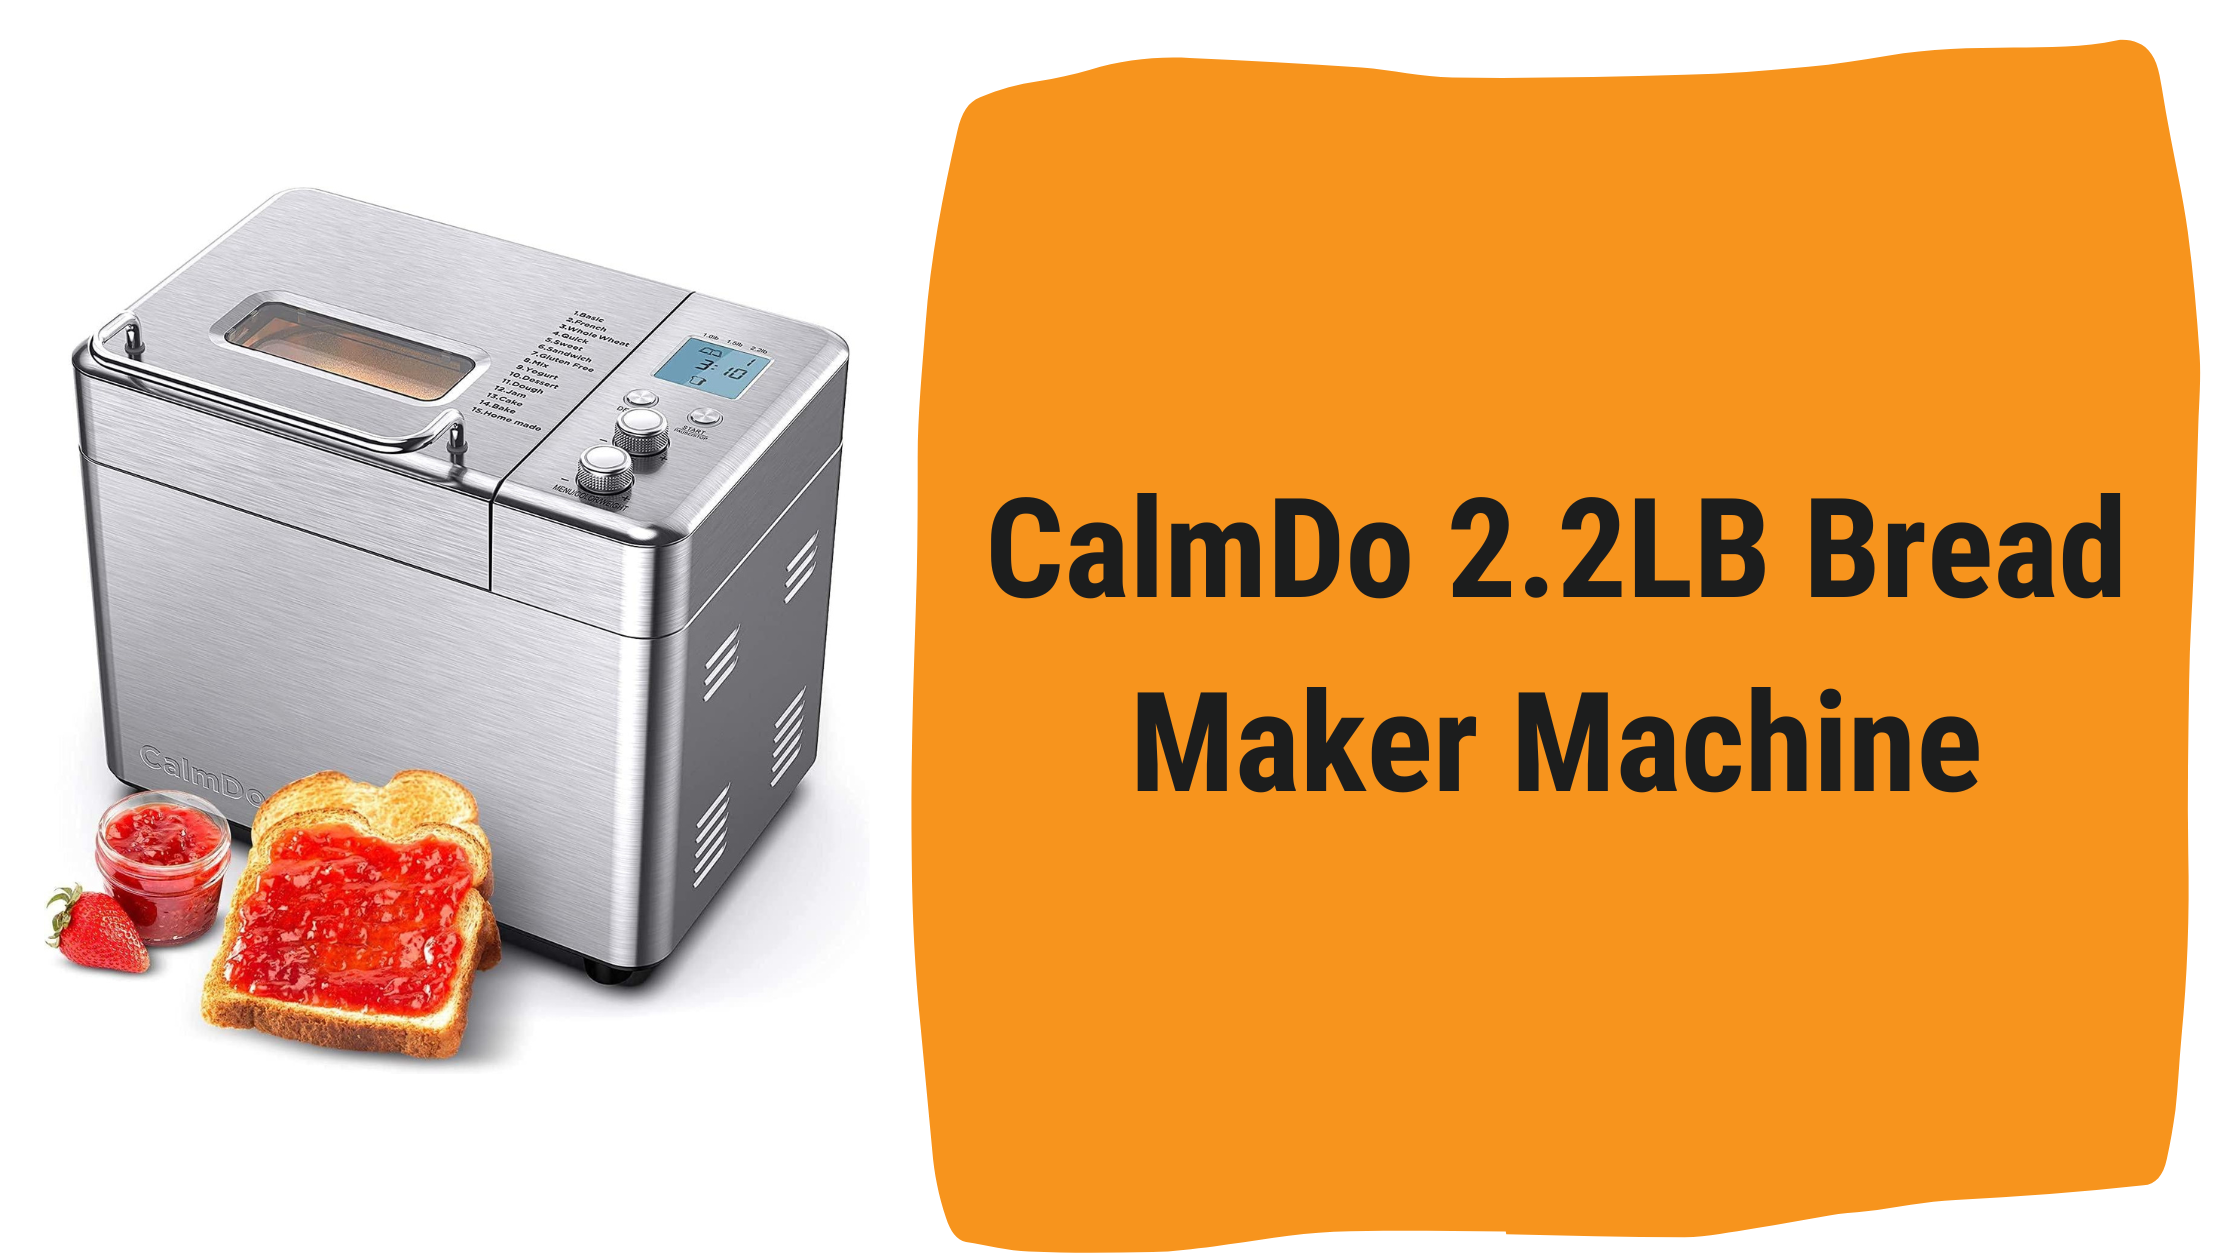 CalmDo 2.2LB Bread Maker